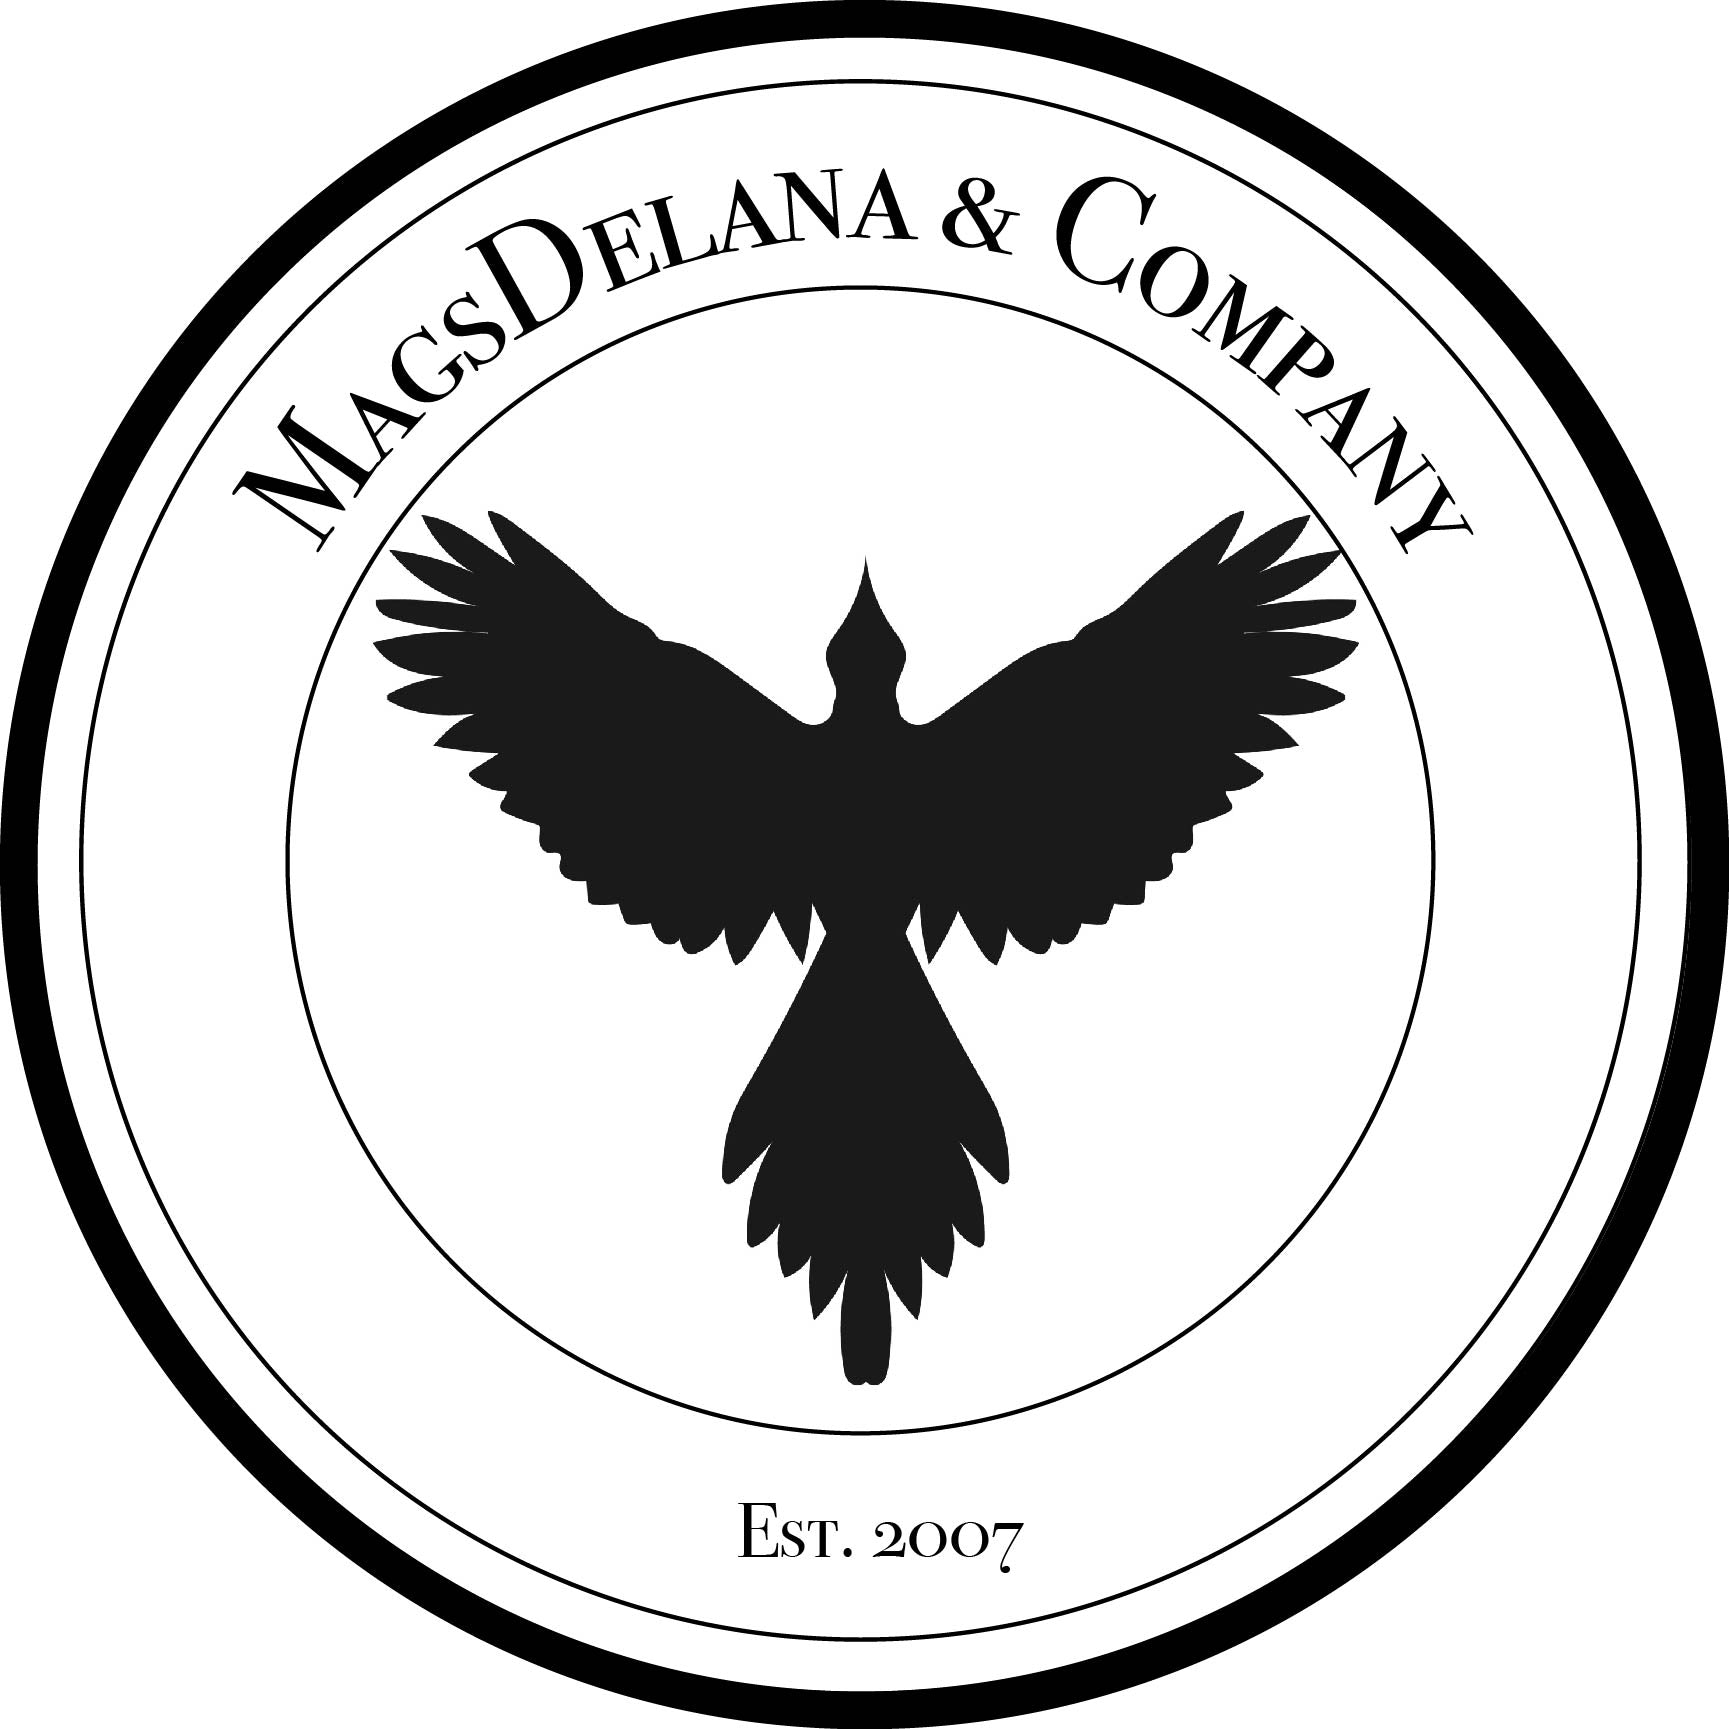 MagsDelana & Co.